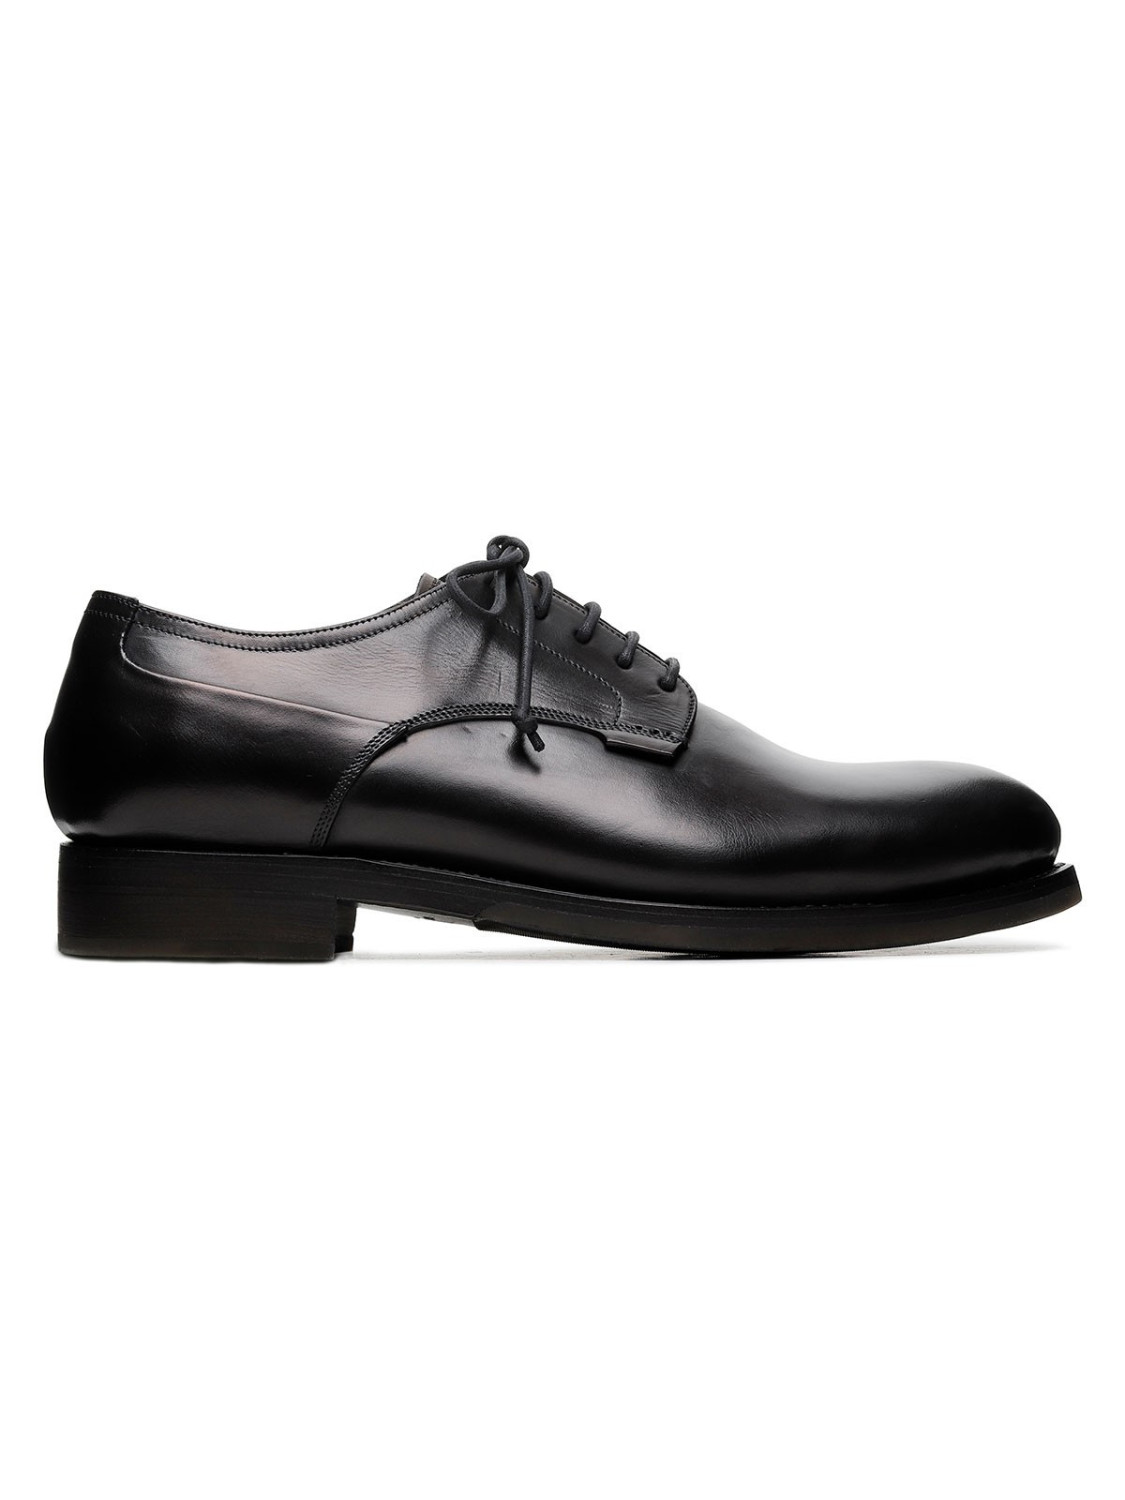 Zurigo black leather Derby shoes